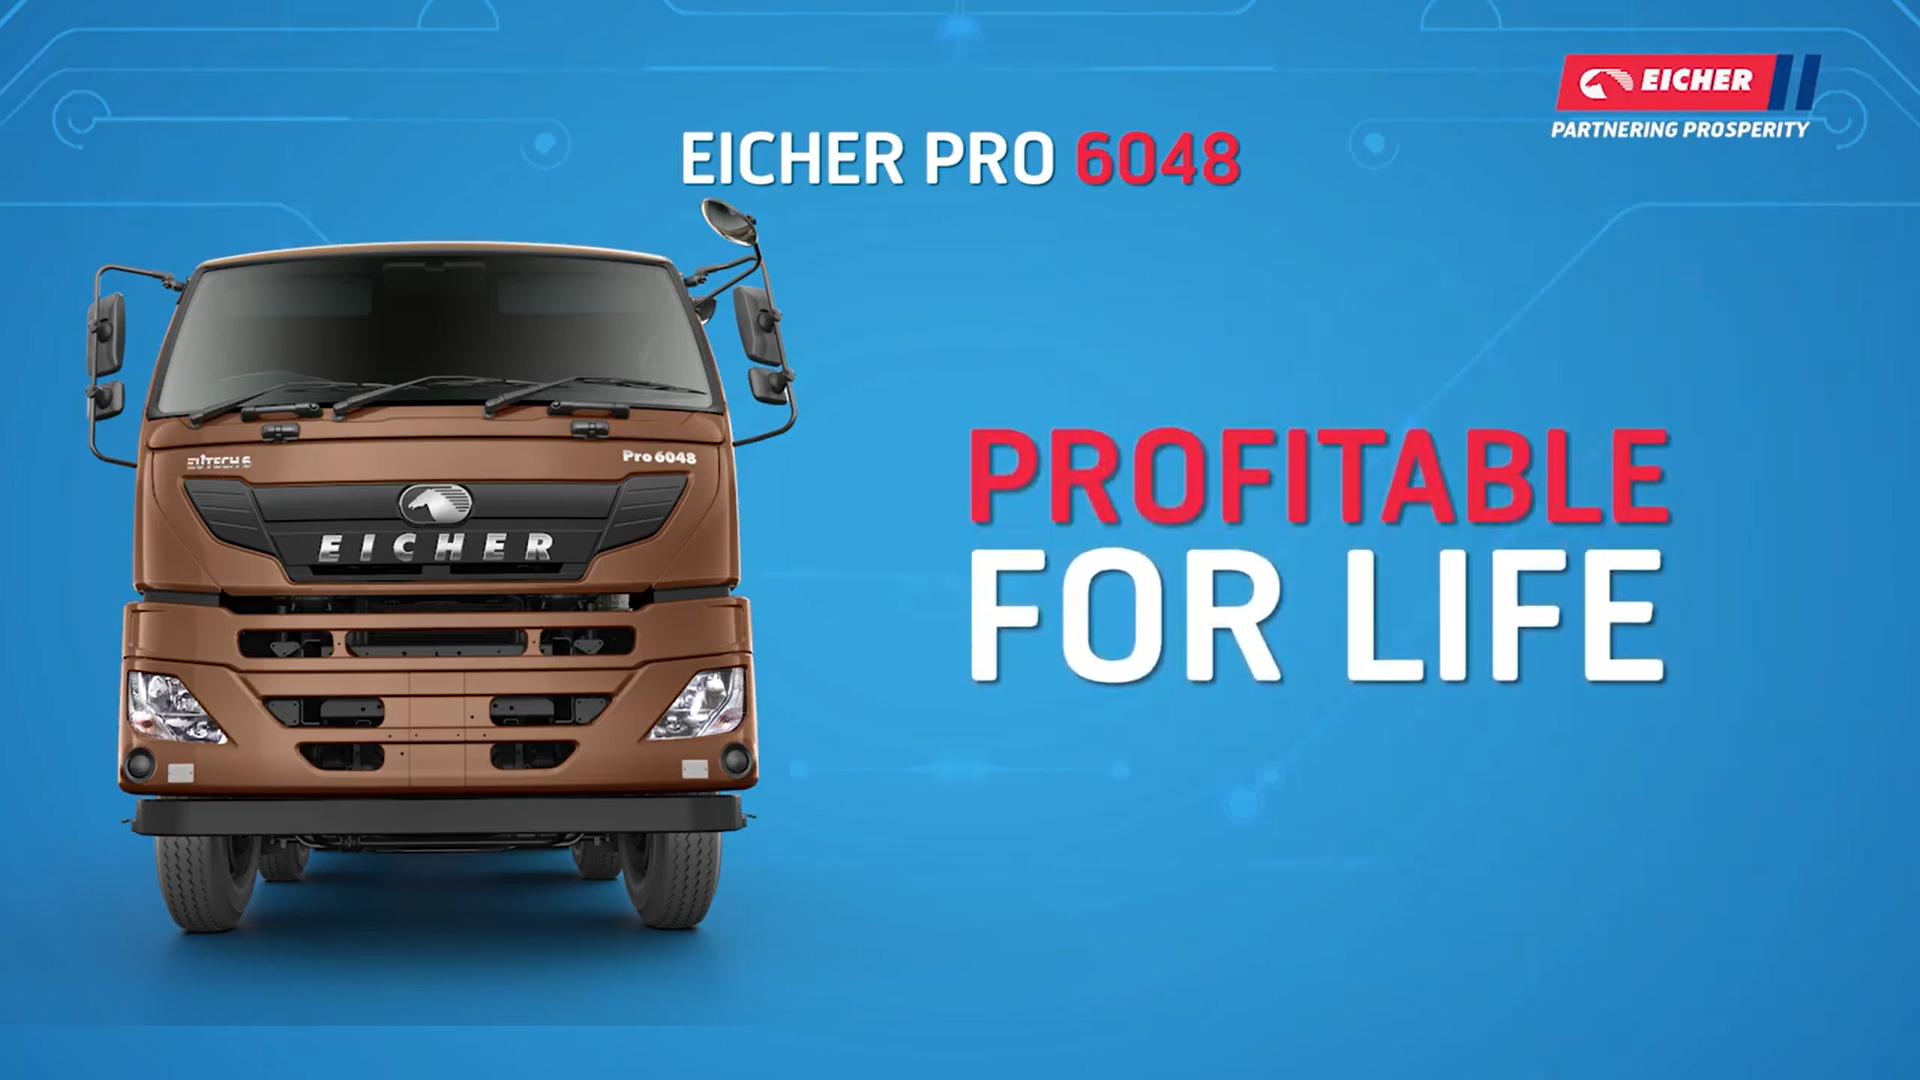 Know Your Eicher BSVI Vehicle - Eicher Pro 6048 (English)